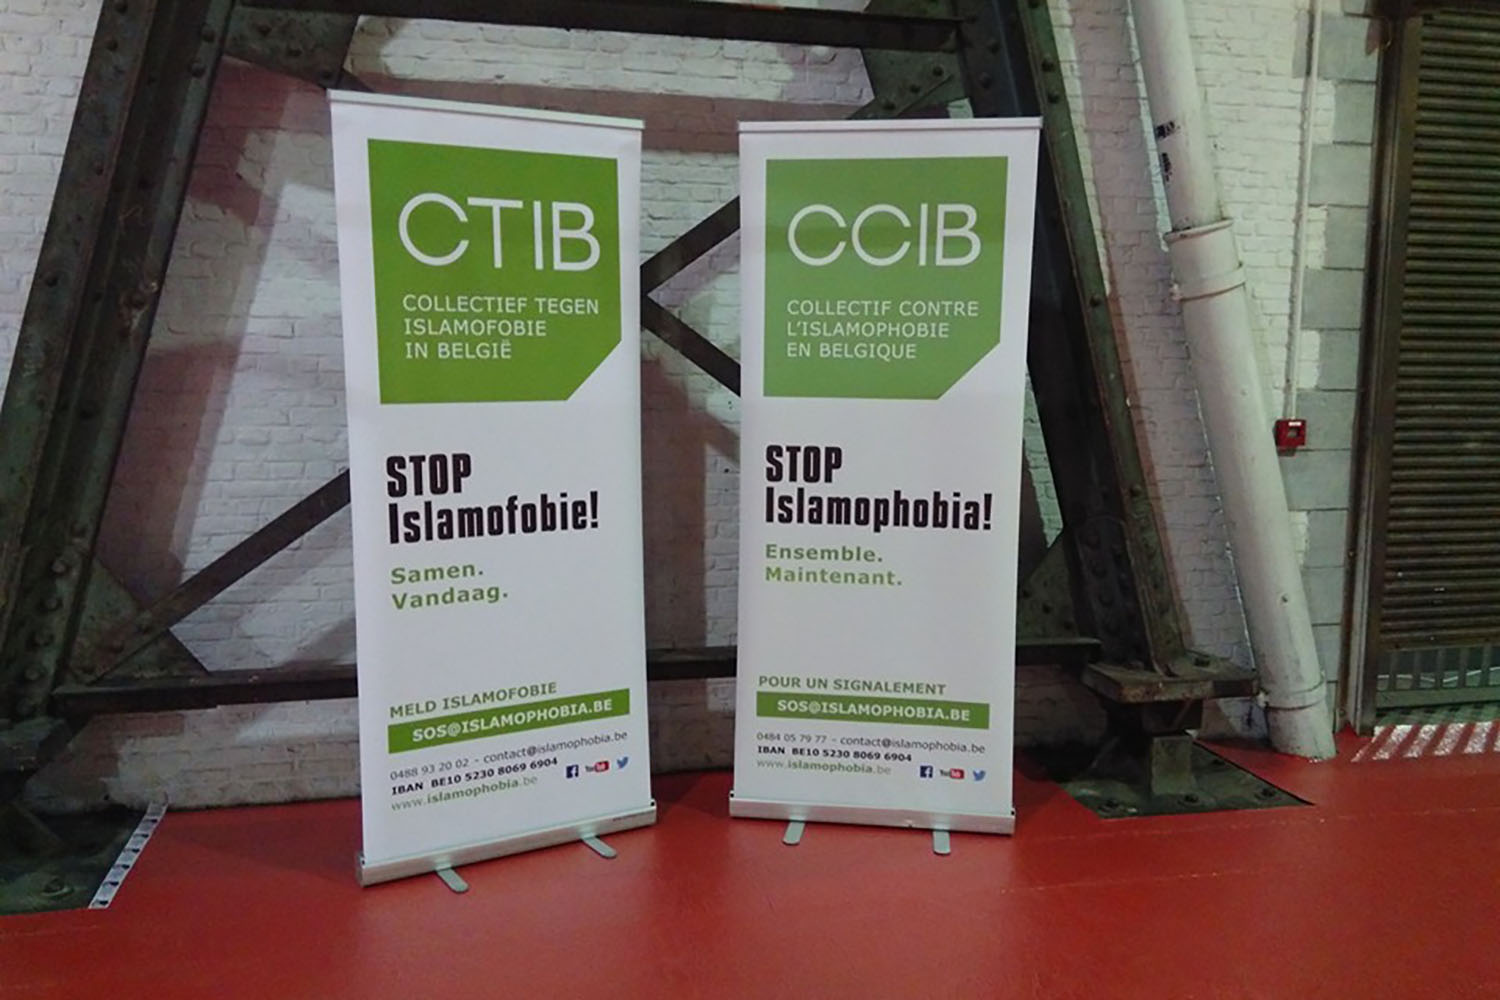 Le CCIB organise aussi des tables rondes, conférences, formations, ateliers